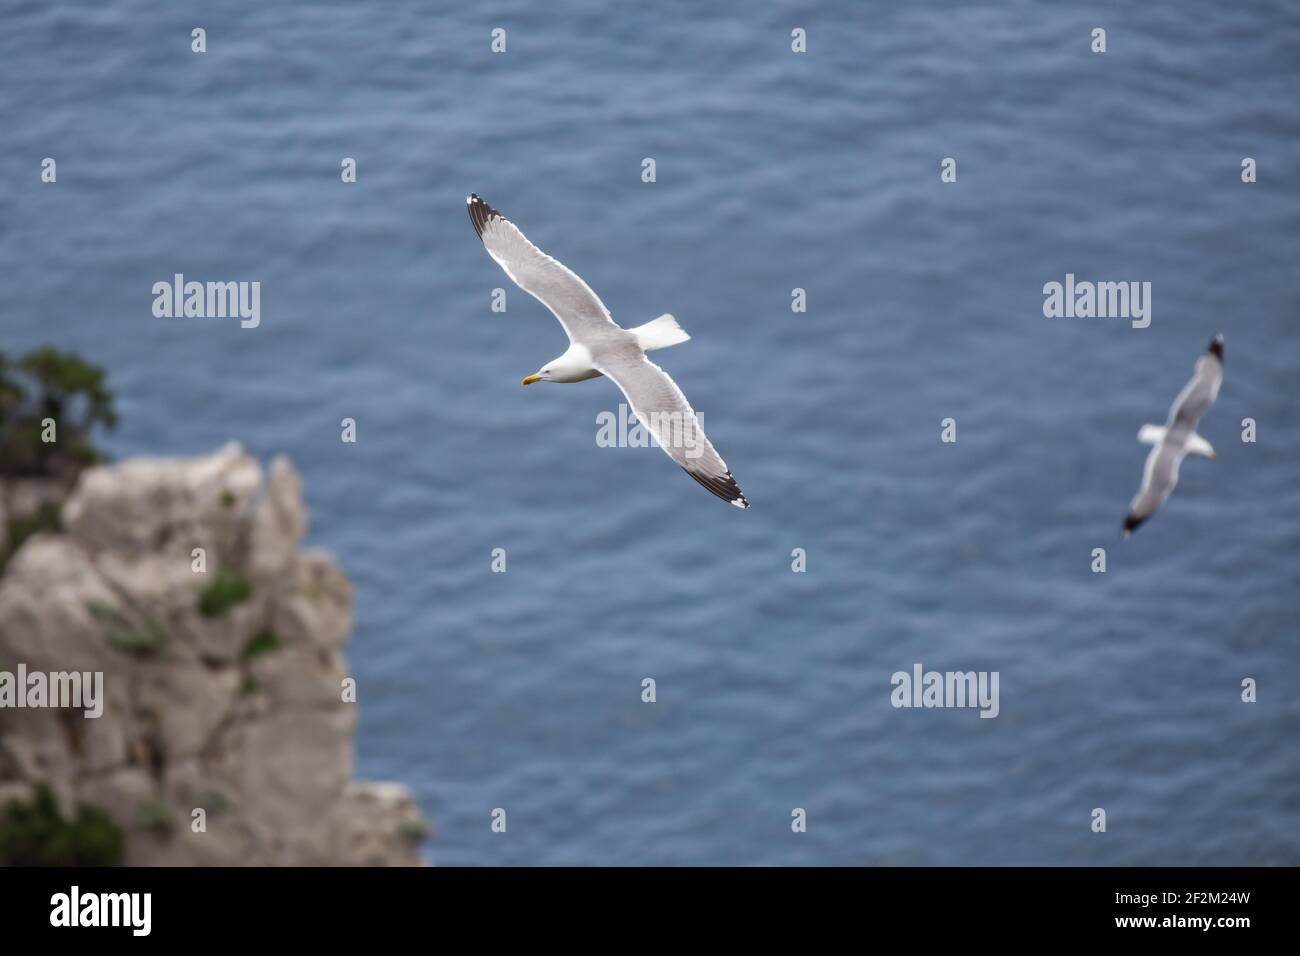 Wasservögel fliegen über das blaue Meer. Möwen fliegen an den Faraglioni Klippen auf der Insel Capri, Tyrrhenisches Meer, Italien Stockfoto